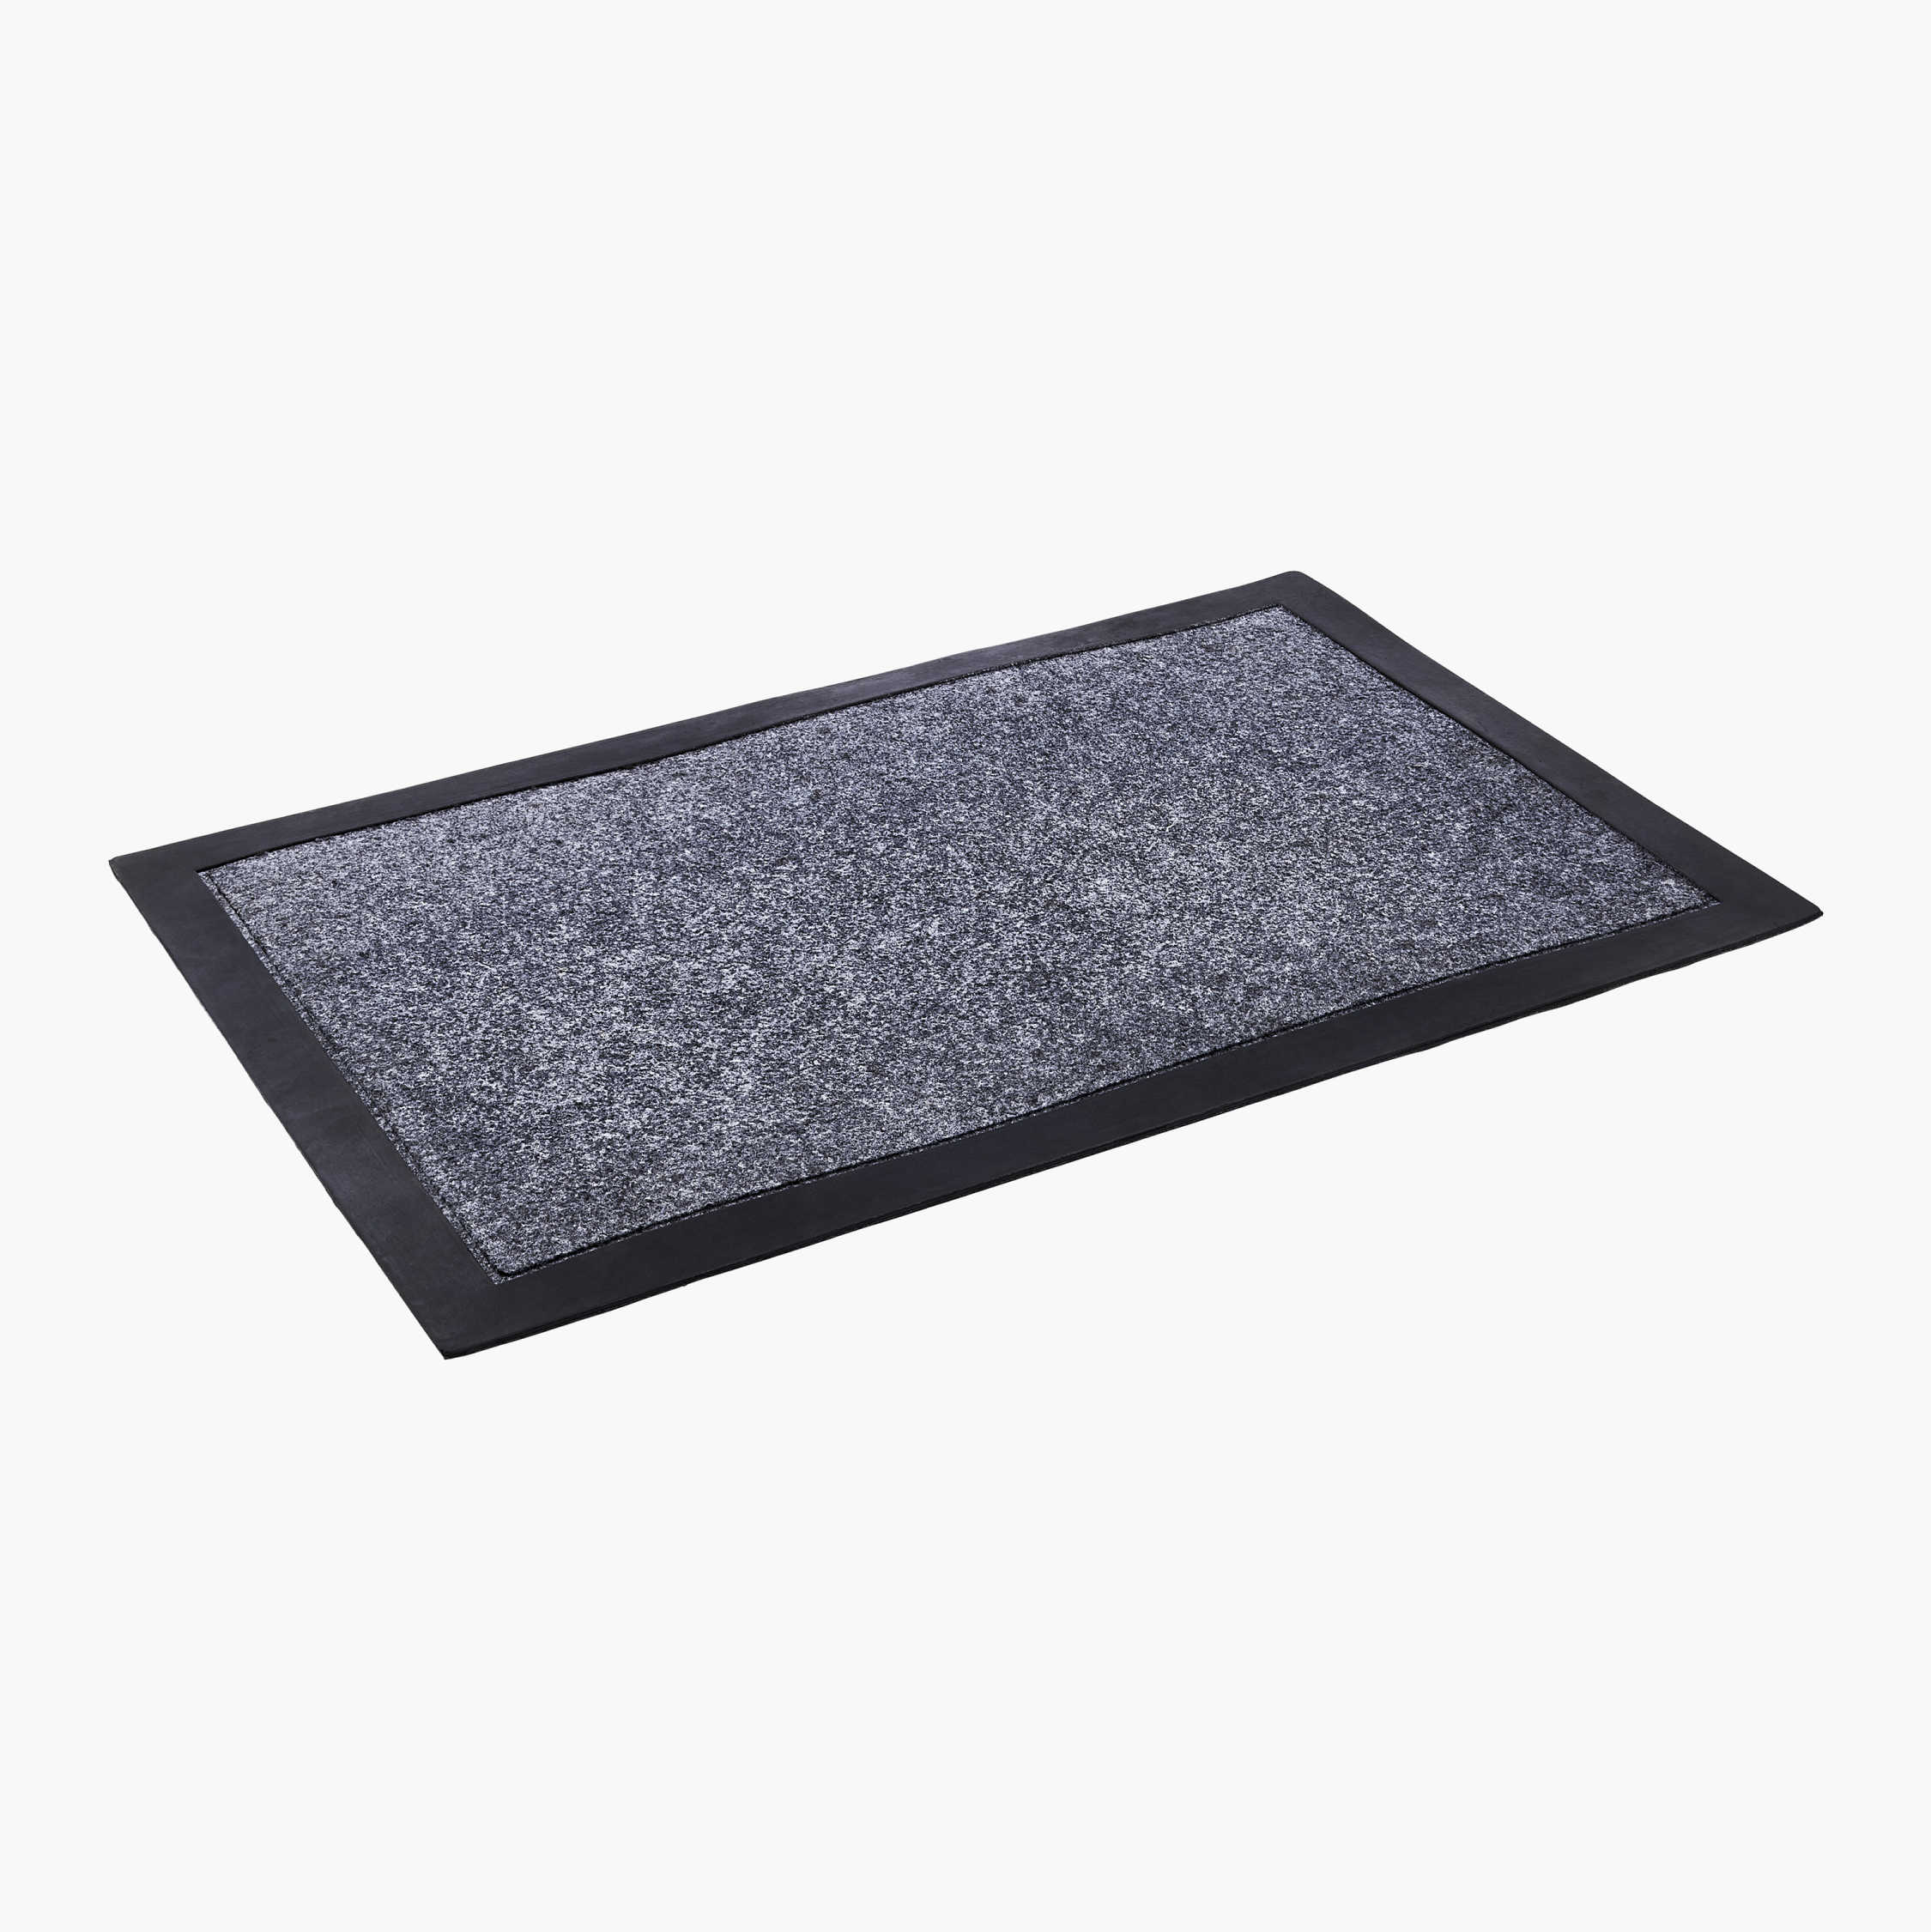 Ruisita Machine Washable Doormat Rubber Backing Doormat Non-slip Super Absorbent Water Door Mat for Home Store and School 